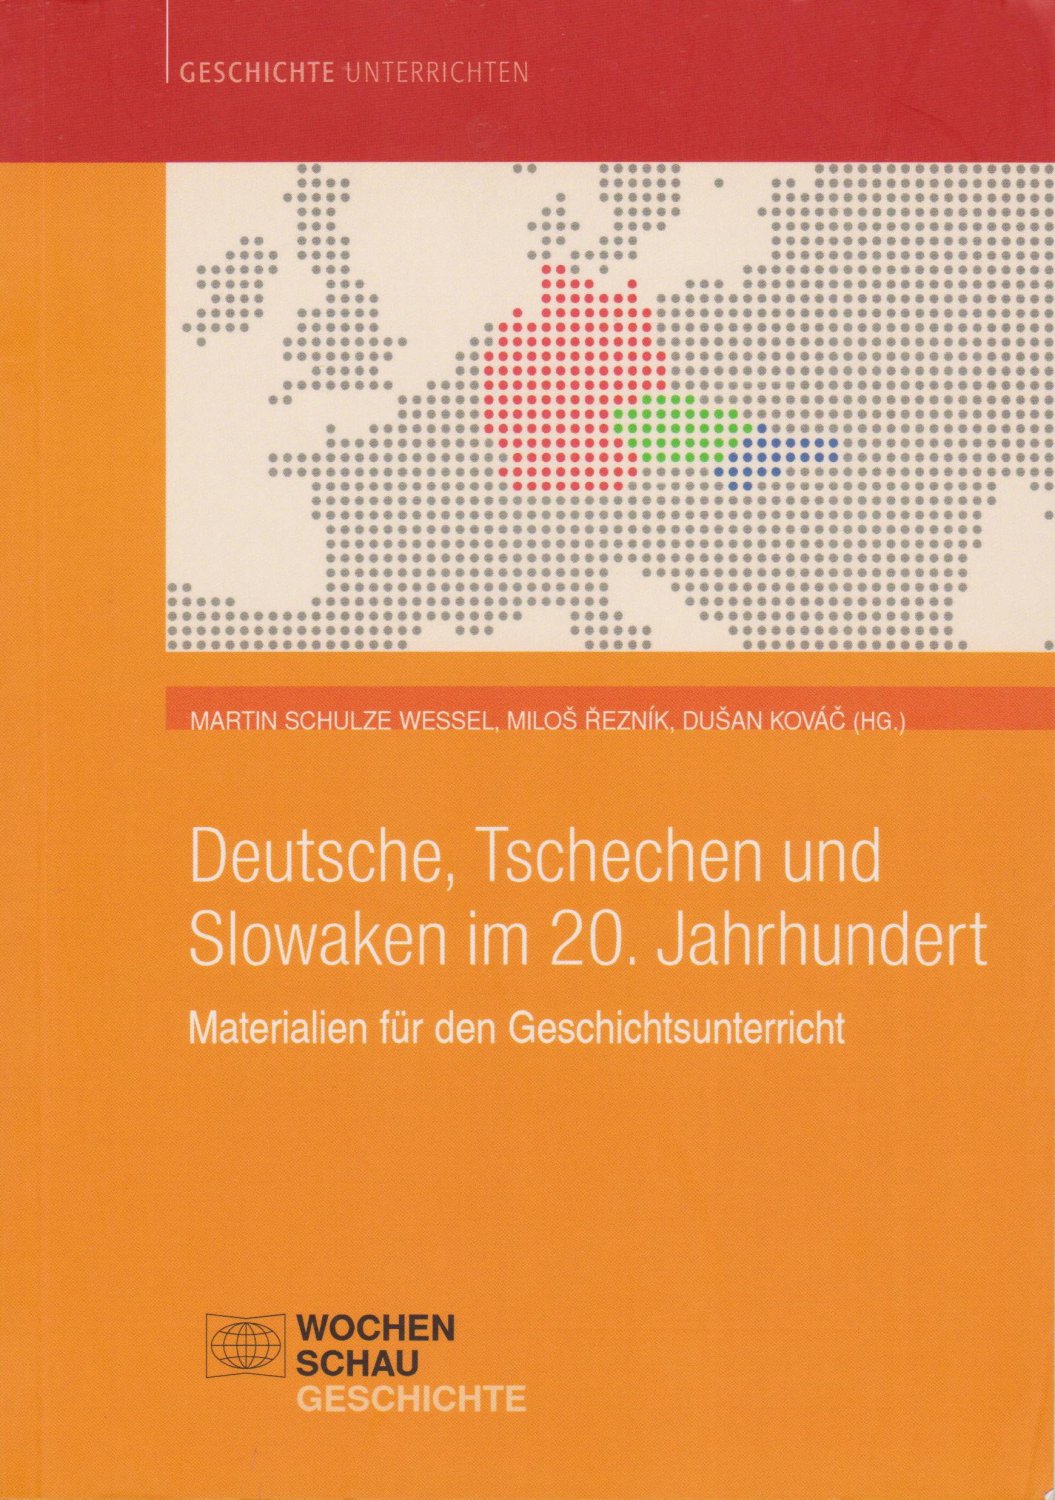 WESSEL, Martin Schulze / Milos REZNIK / Dusan KOVAC (Hrsg.):  Deutsche, Tschechen und Slowaken im 20. Jahrhundert. Materialien für den Geschichtsunterricht. 